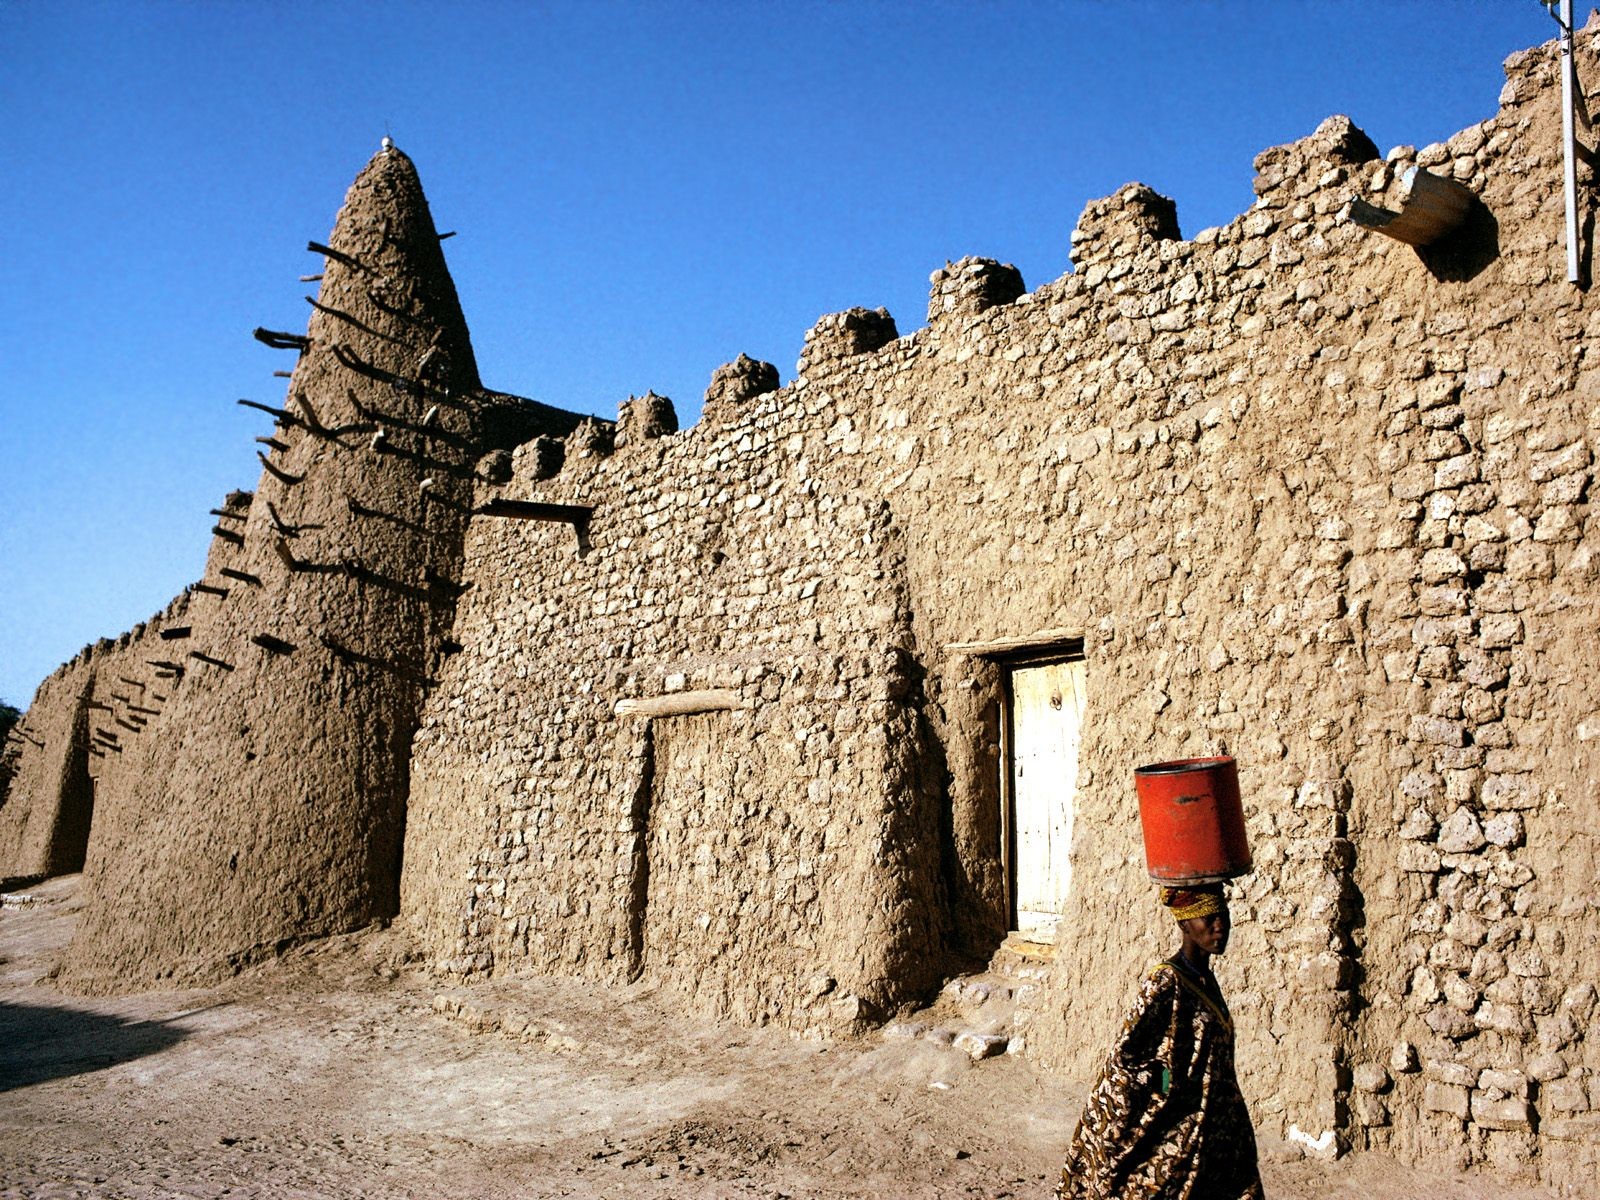 General 1600x1200 Timbuktu Mali mud wall building women